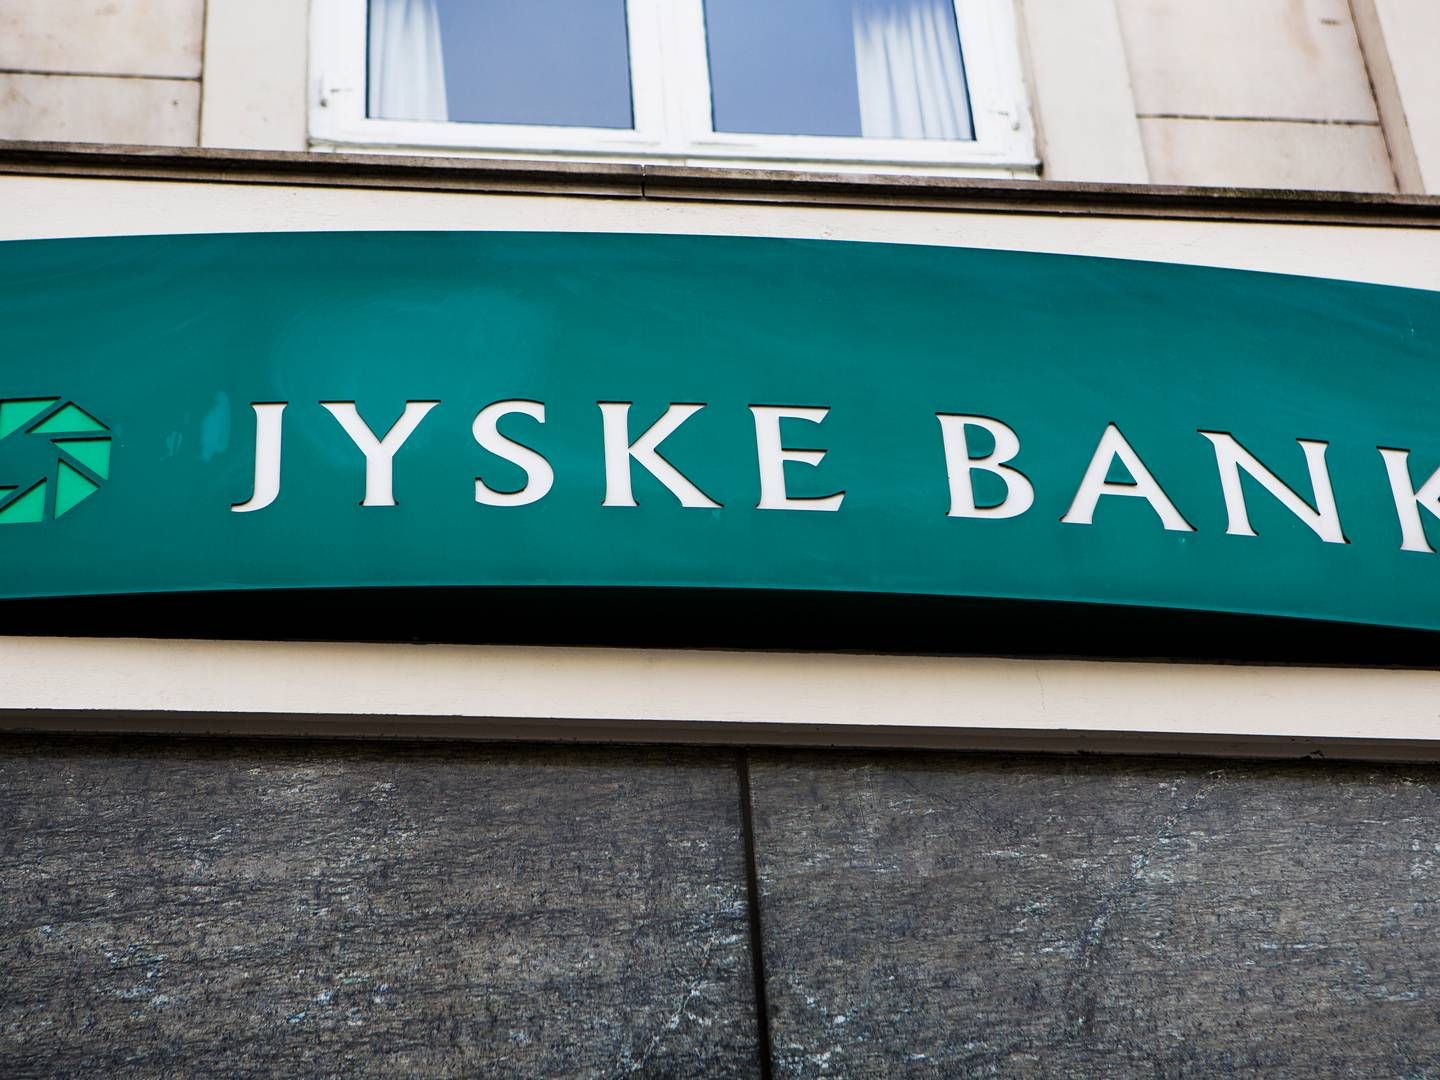 Jyske Bank står foran en retssag i Sø- og Handelsretten mod Forbrugerombudsmanden omkring indførelse af negative renter. | Photo: Simon Fals